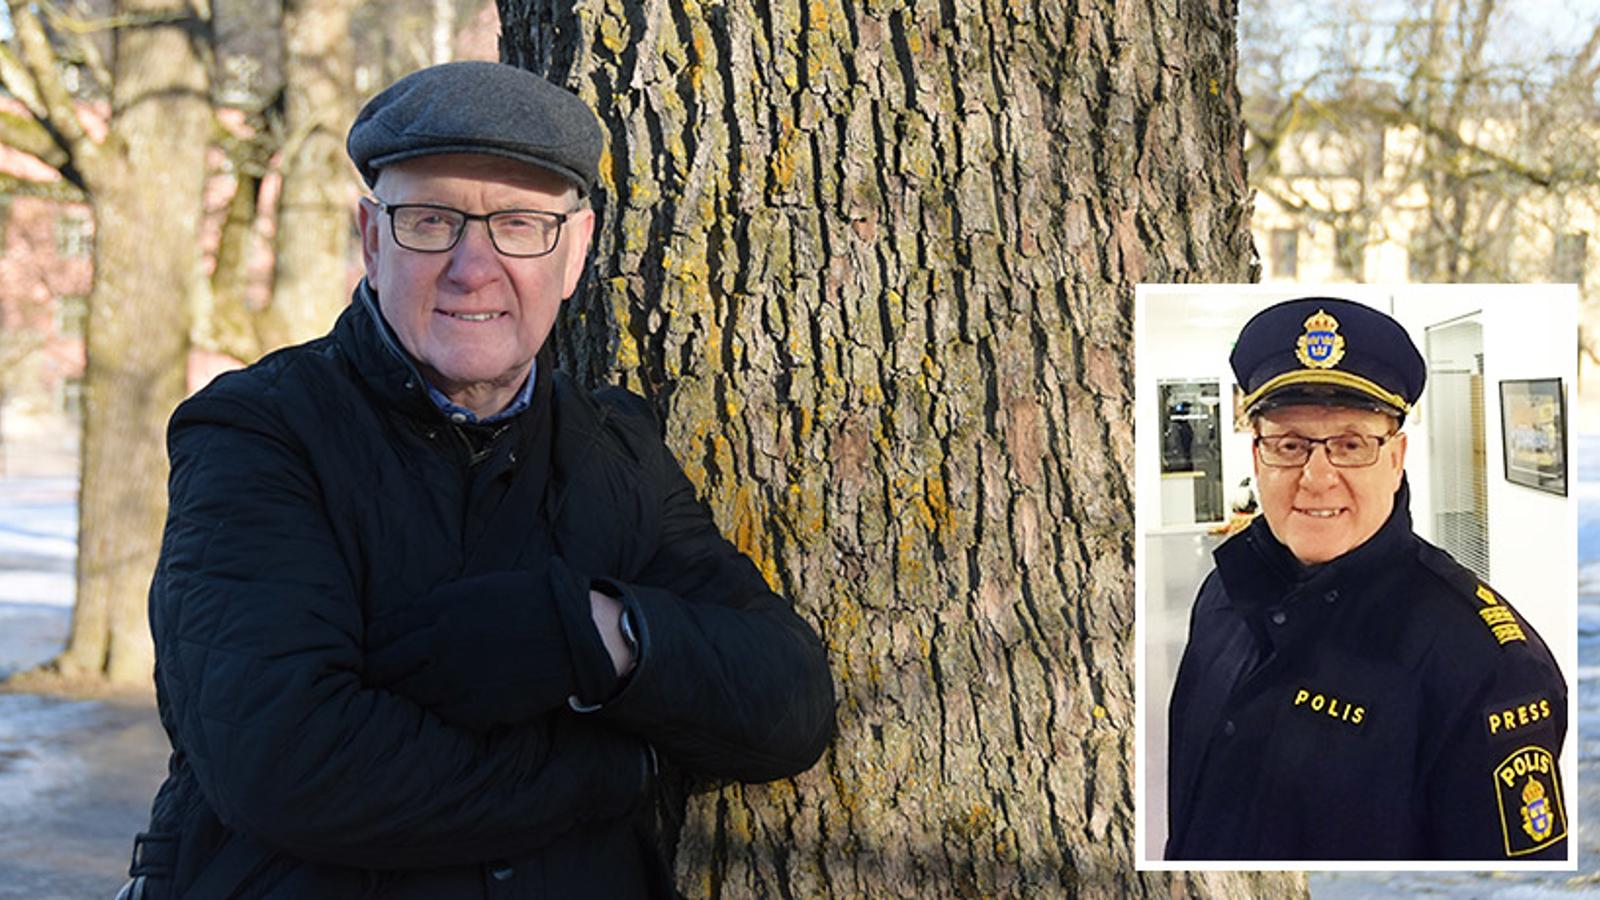 Till vänster: Porträttbild av Christer Nordström som står lutad mot ett träd, med armarna i kors, och ler mot kameran. Till höger: Bild på Christer i polisuniform.